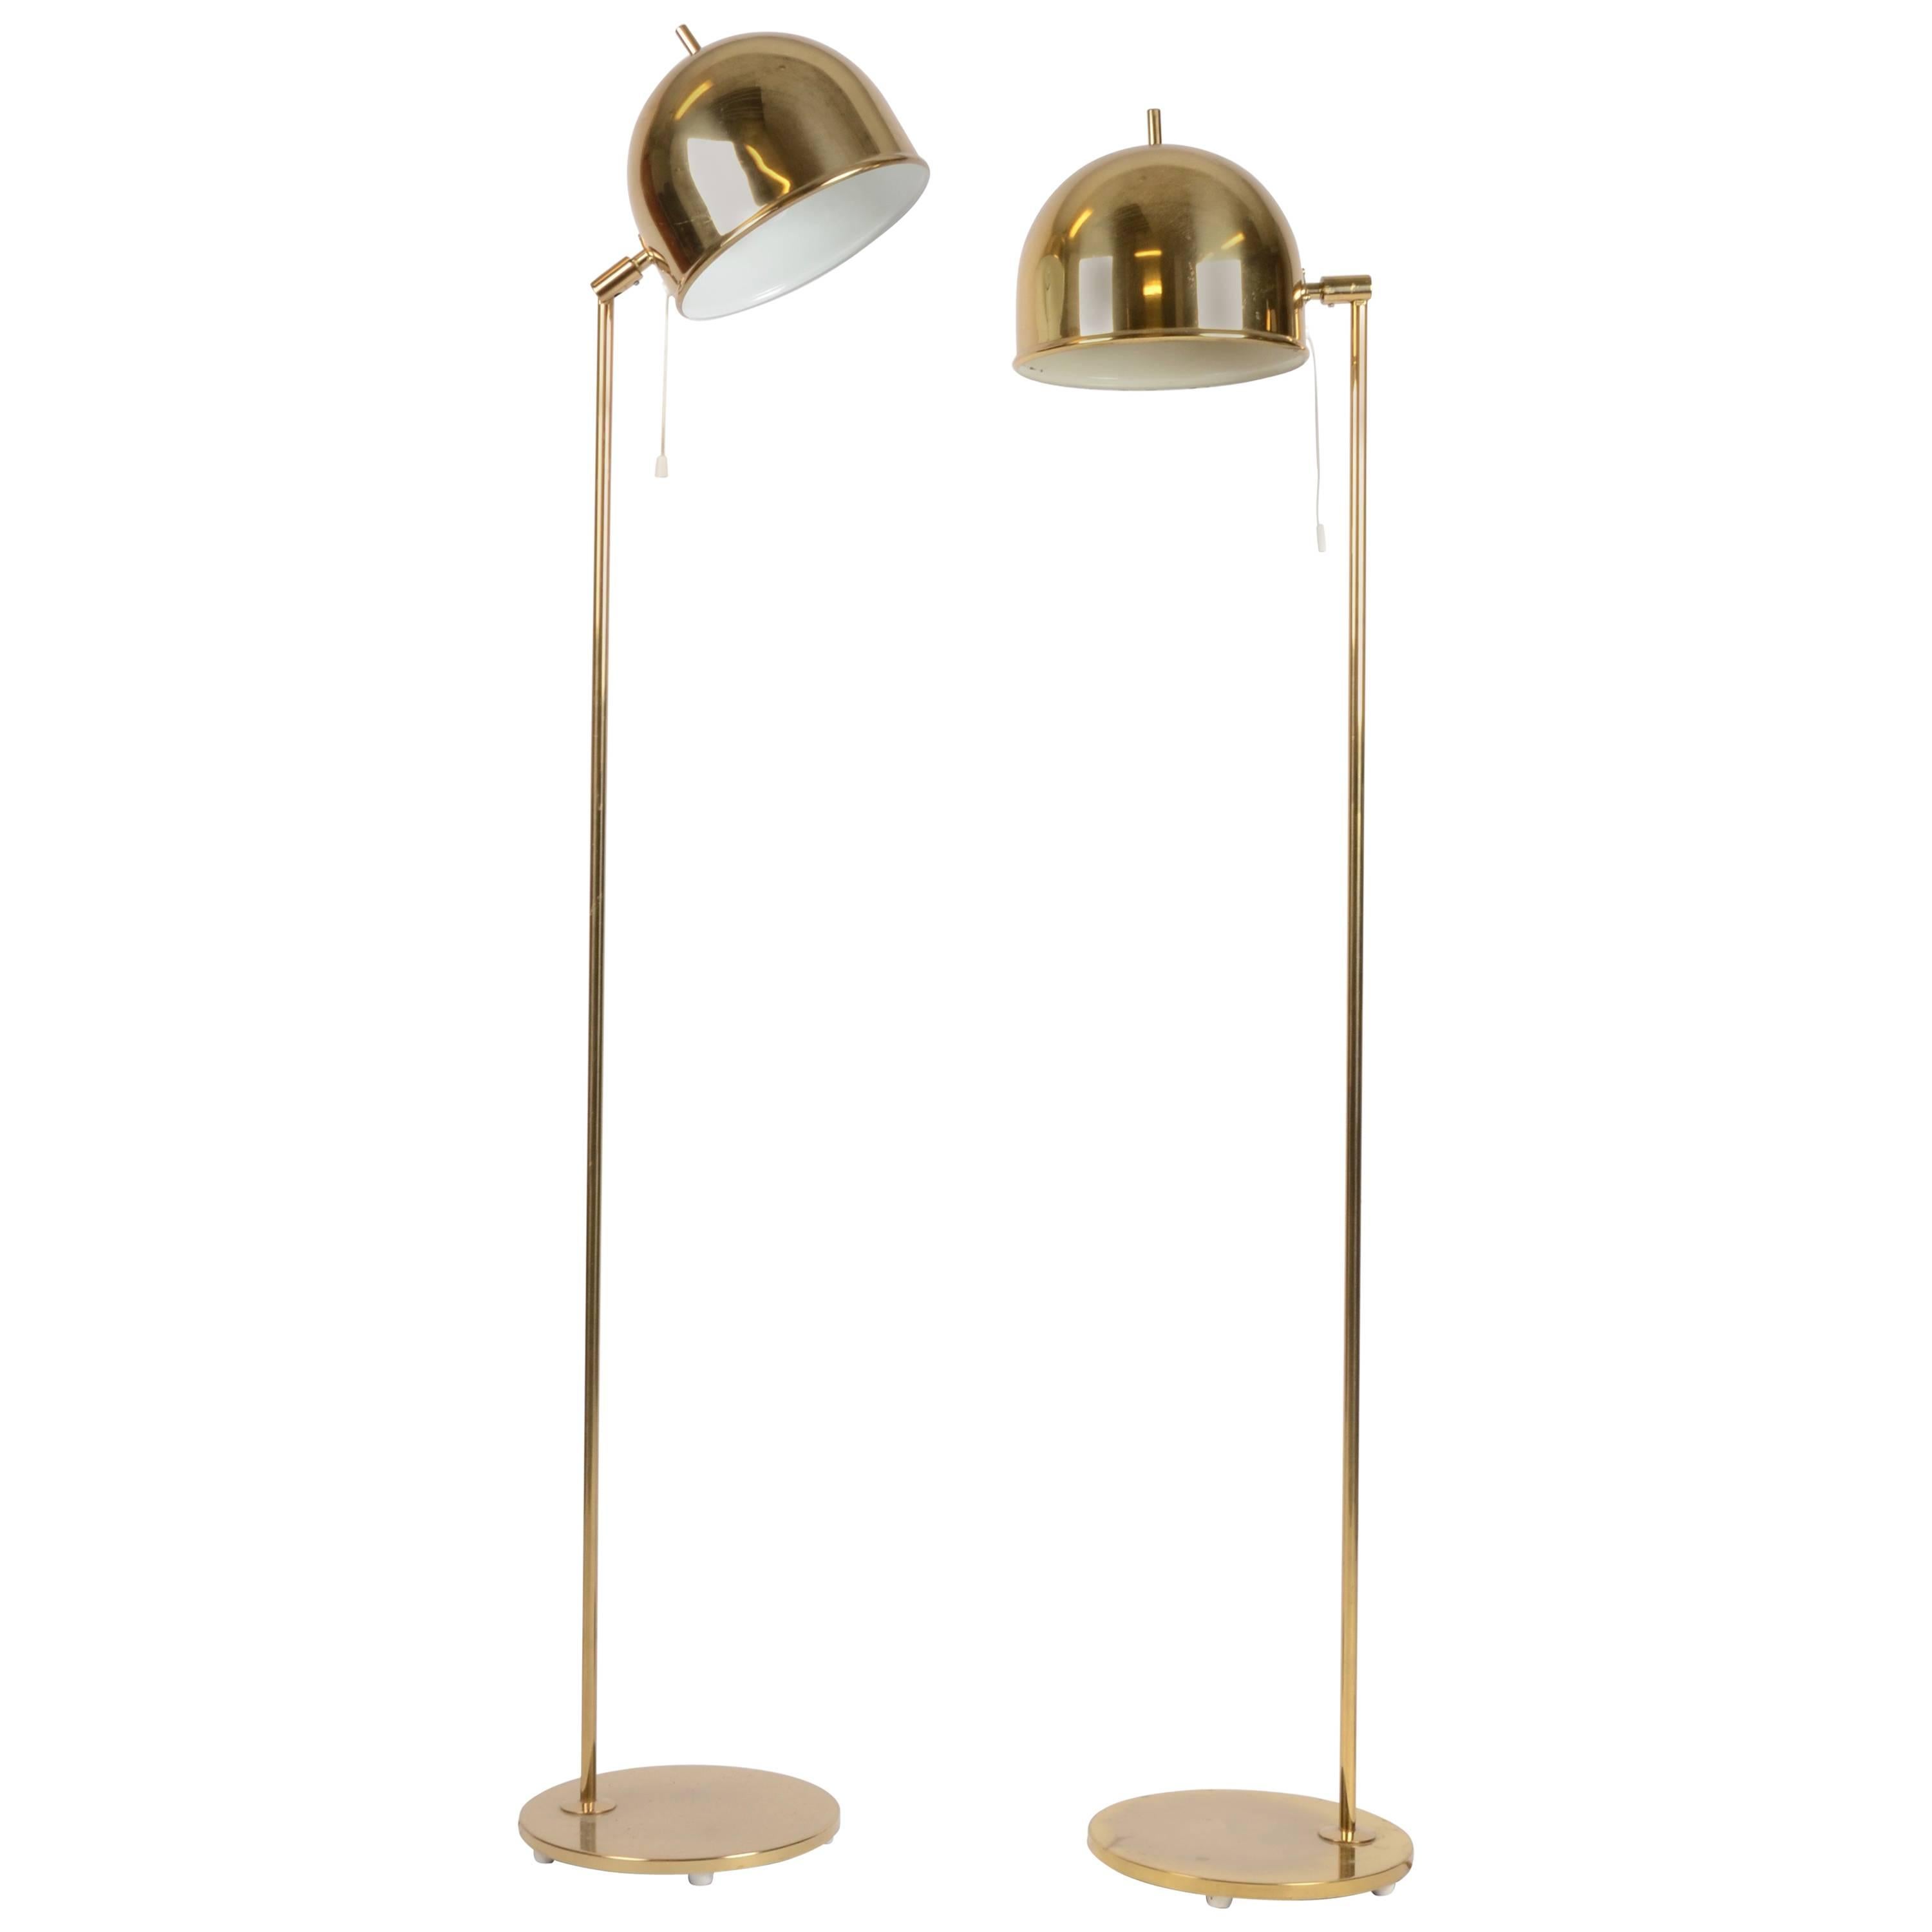 Pair of Floor Lamps, Model G-075, Bergboms, Sweden, 1960-1970s